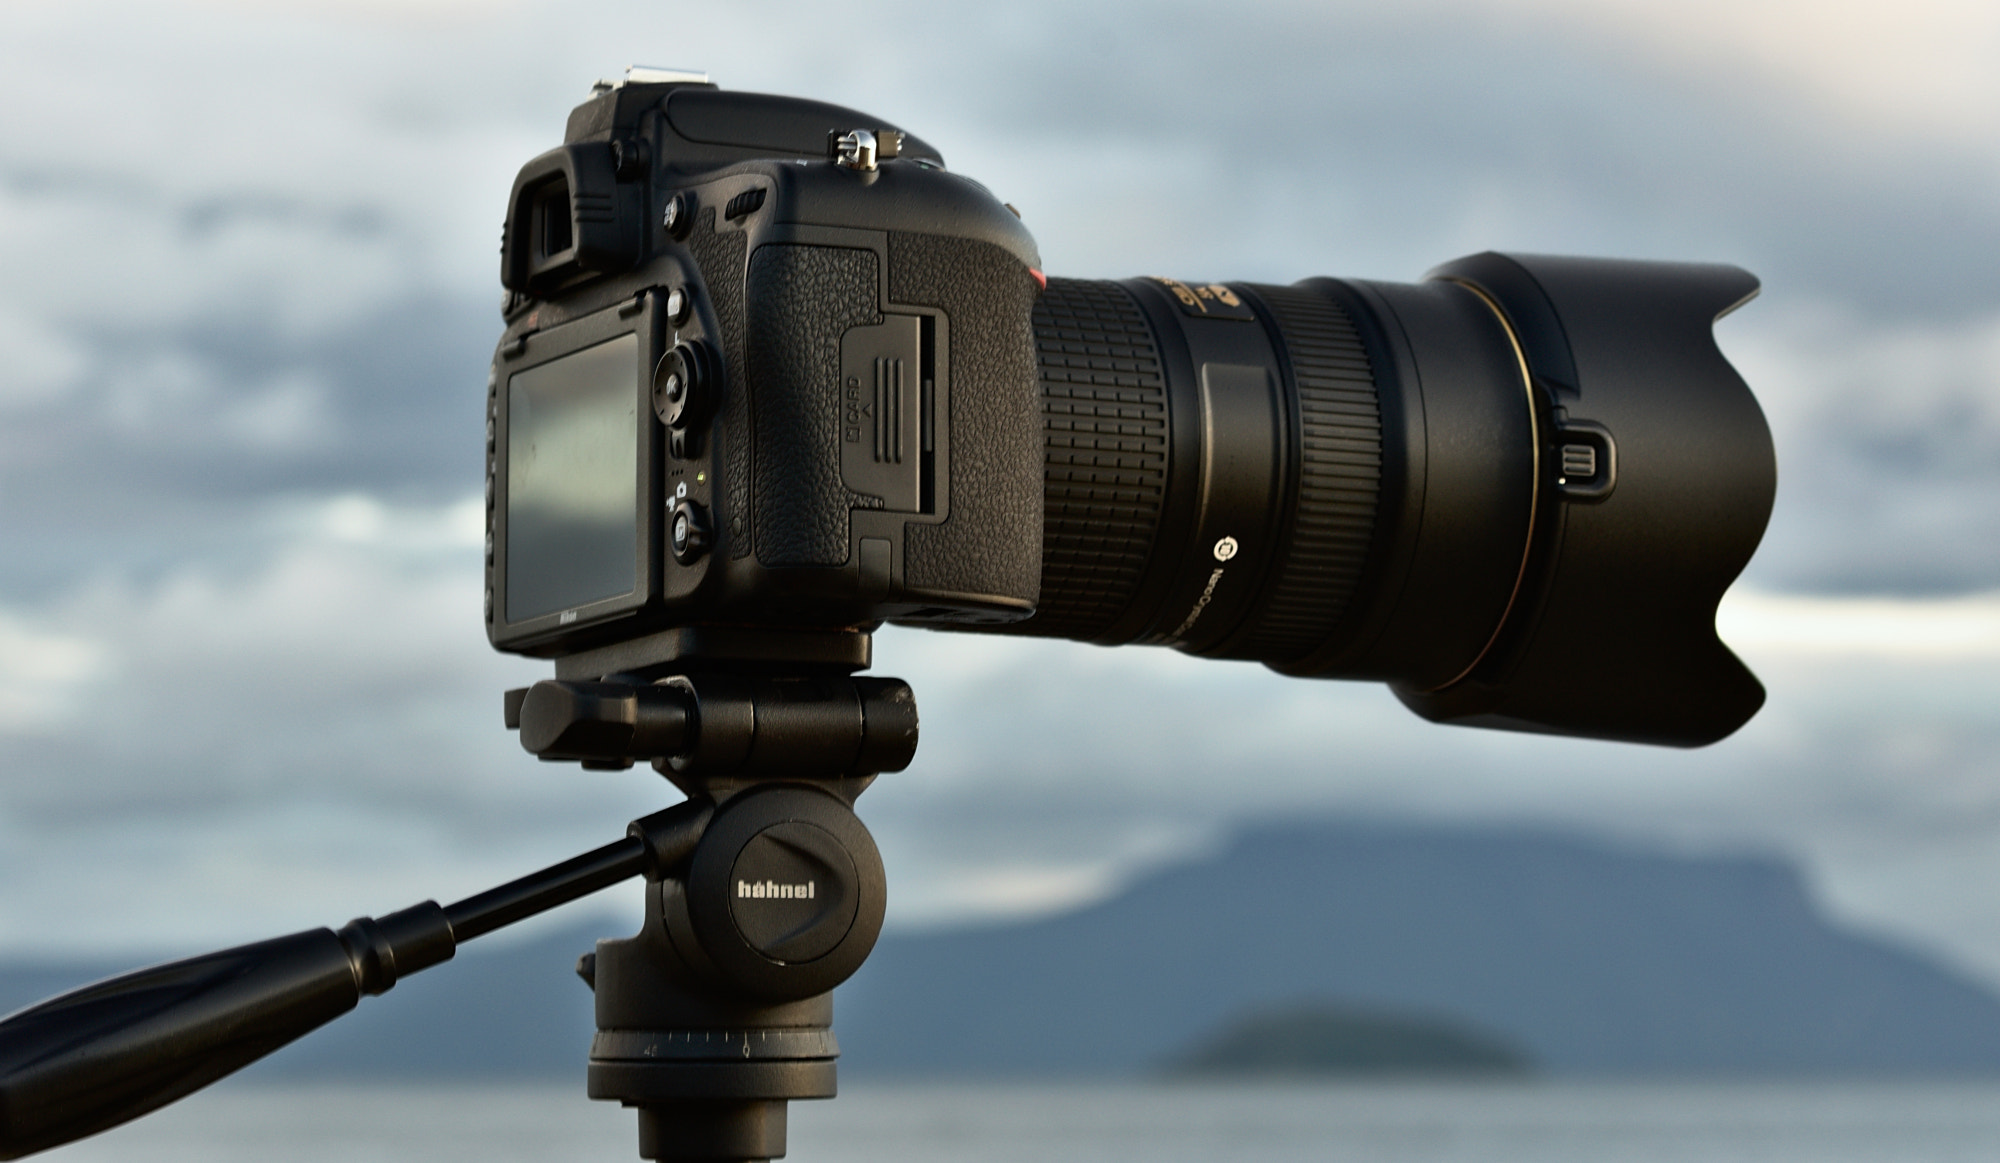 Nikon D5100 + Nikon AF-S Nikkor 70-200mm F2.8G ED VR II sample photo. Fast motion photography